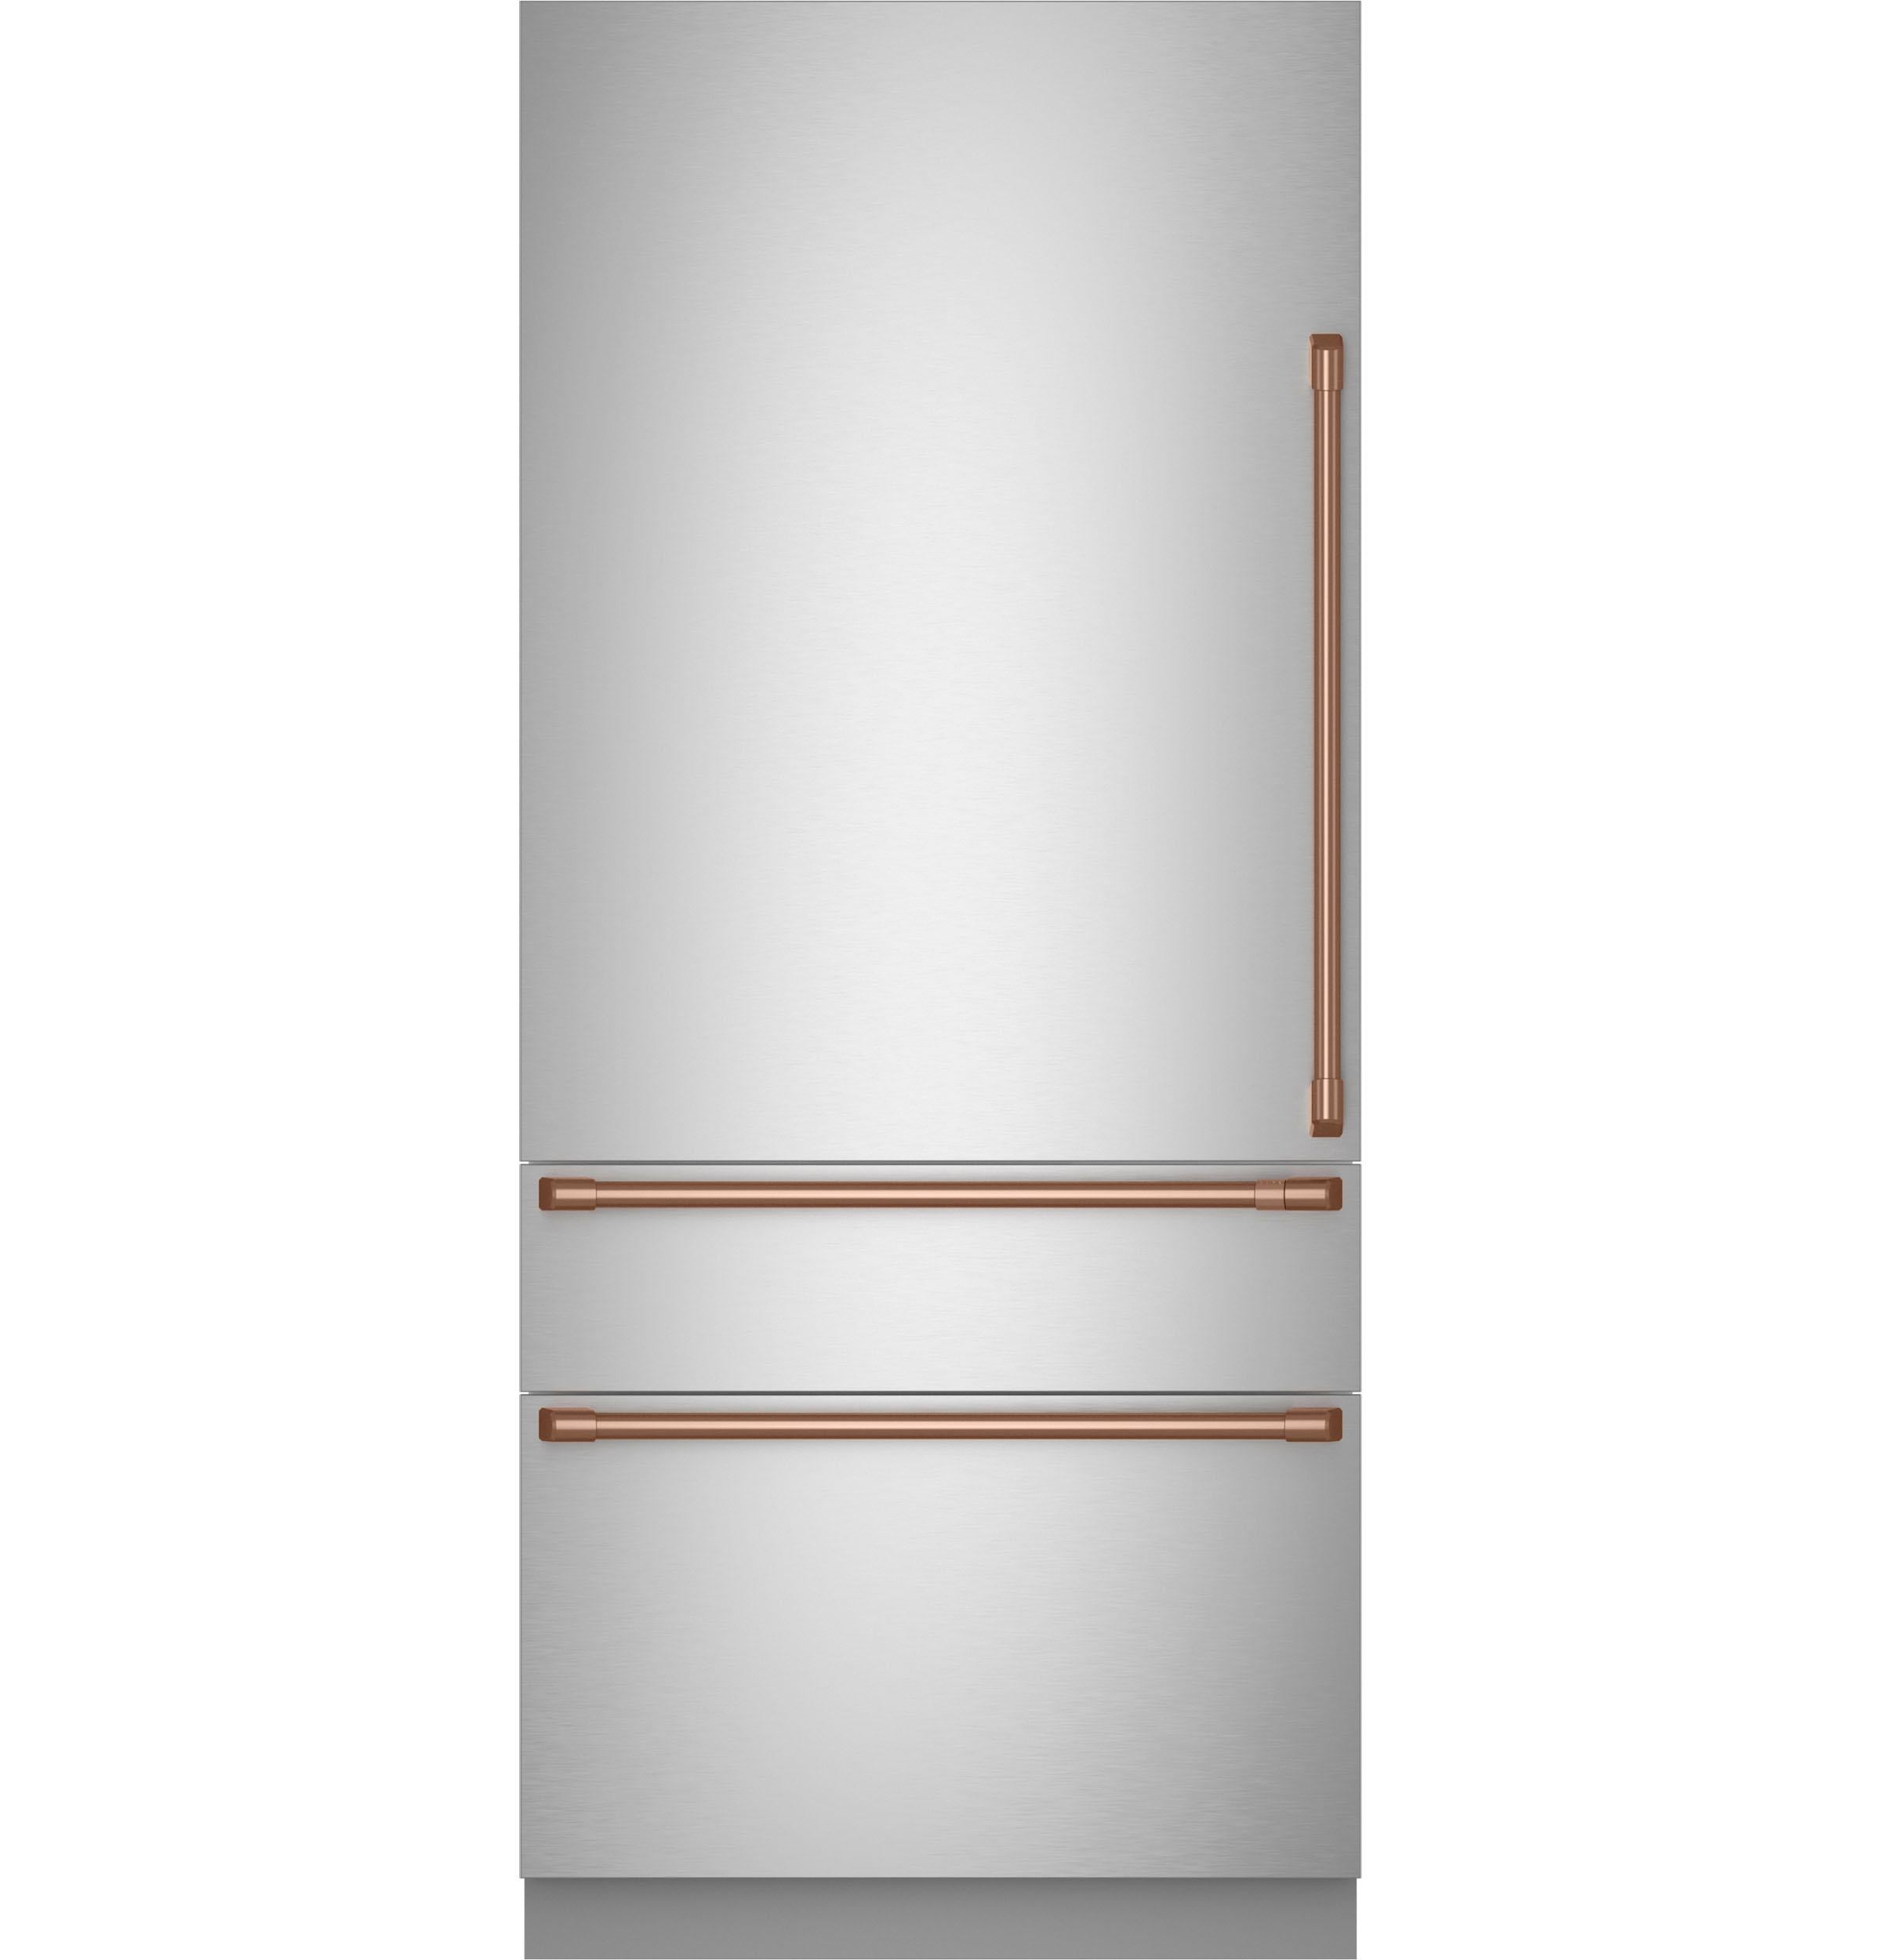 Cafe Caf(eback)™ Refrigeration Handle Kit - Brushed Copper